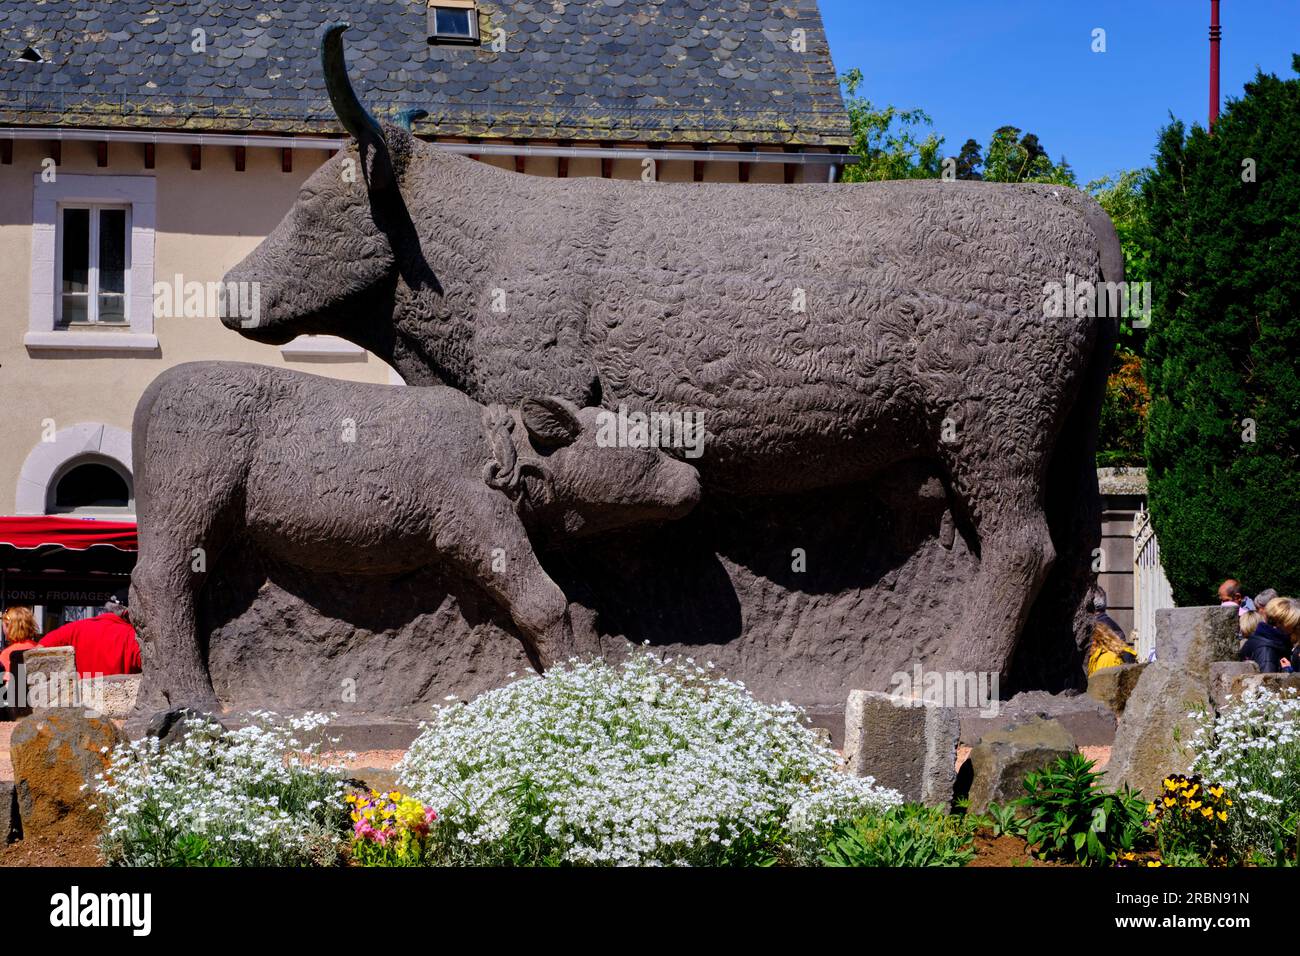 France, Cantal (15), Allanche, sculpture d'une vache Salers sur la place du Foirail. Parc naturel régional des Volcans d'Auvergne, plateau du Cézallier Banque D'Images